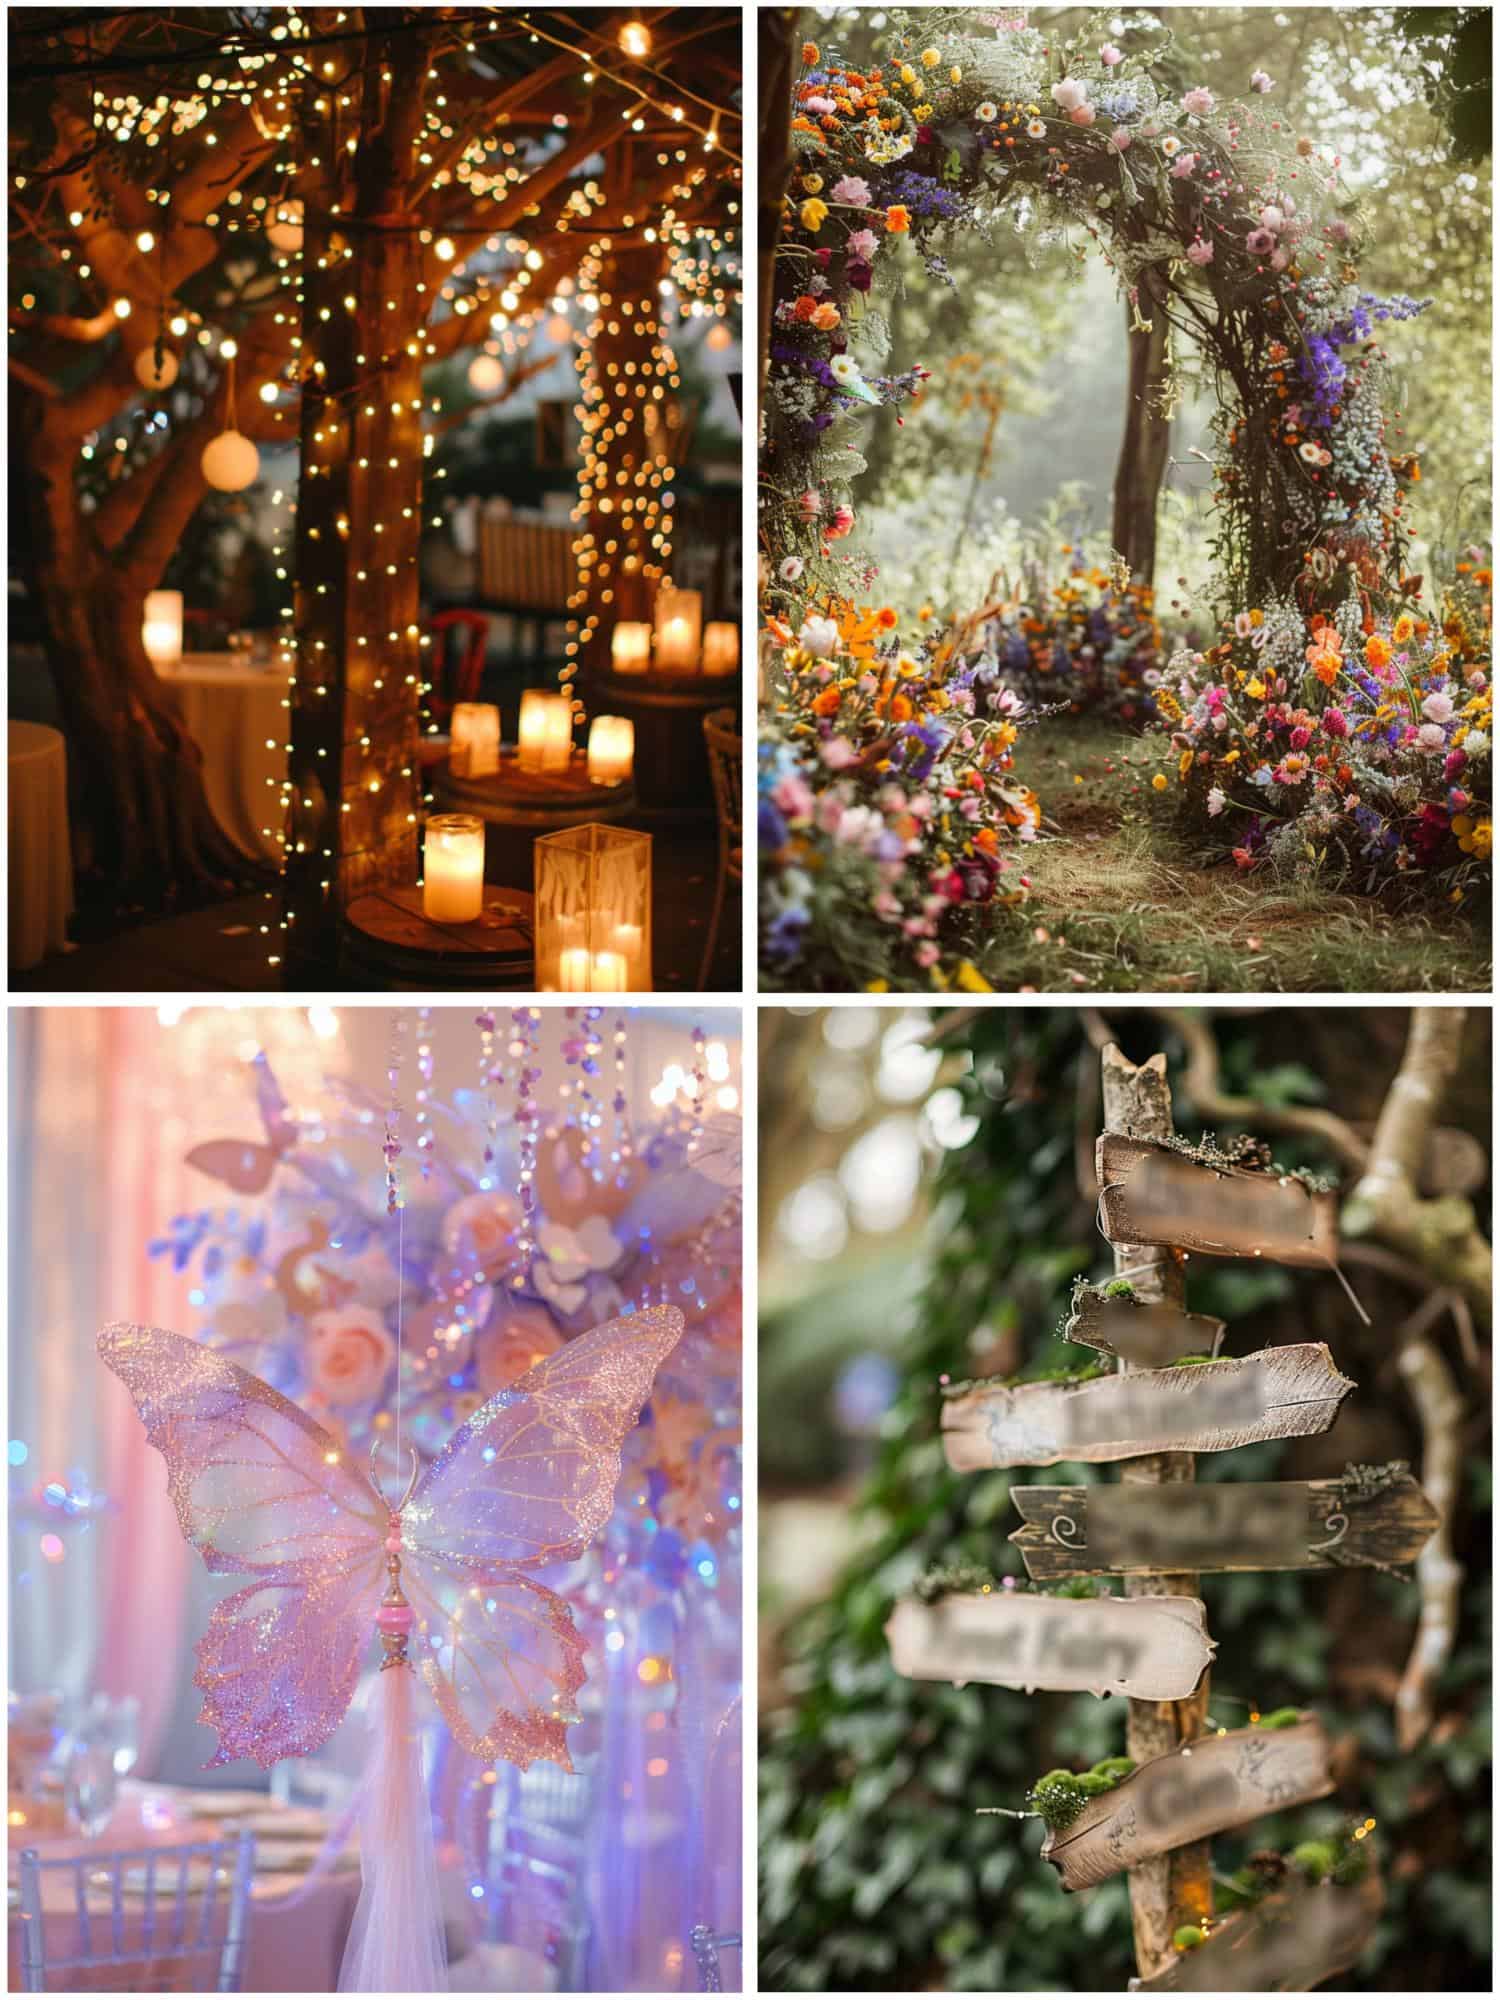 fairy wedding theme ideas for decor